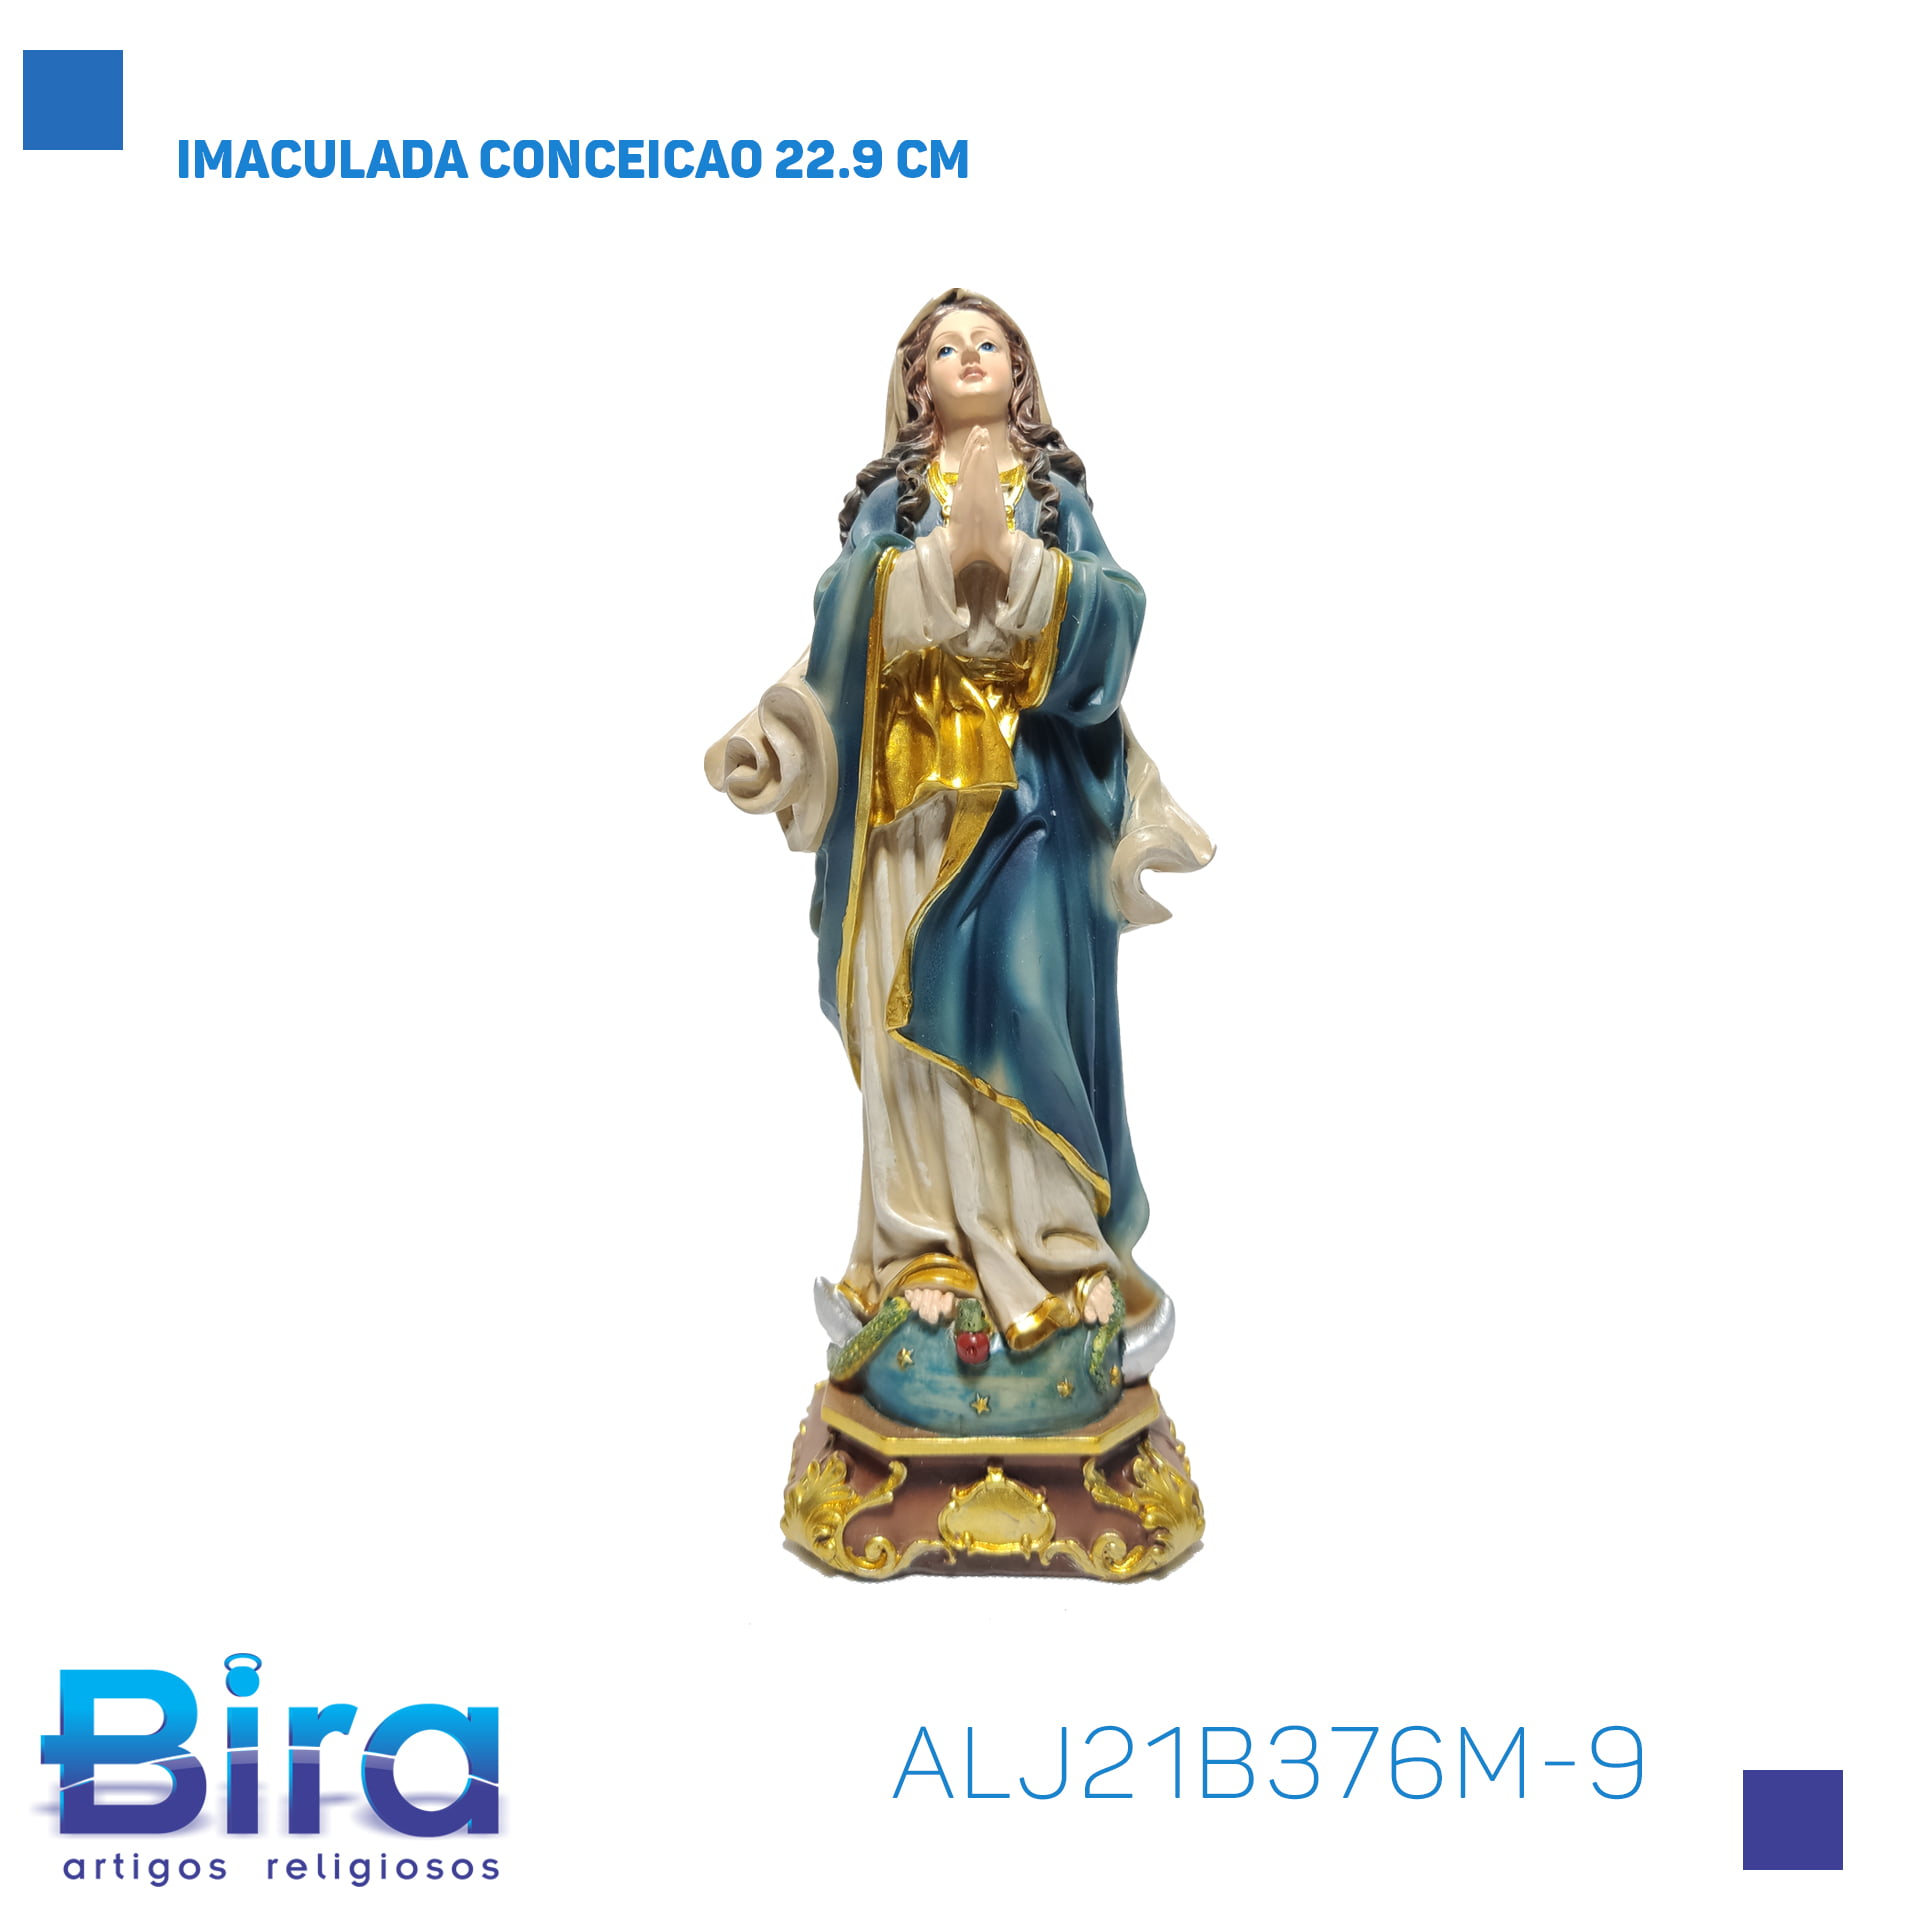 Bira Artigos Religiosos - IMACULADA CONCEICAO 22.9 CM - Cód . ALJ21B376M-9